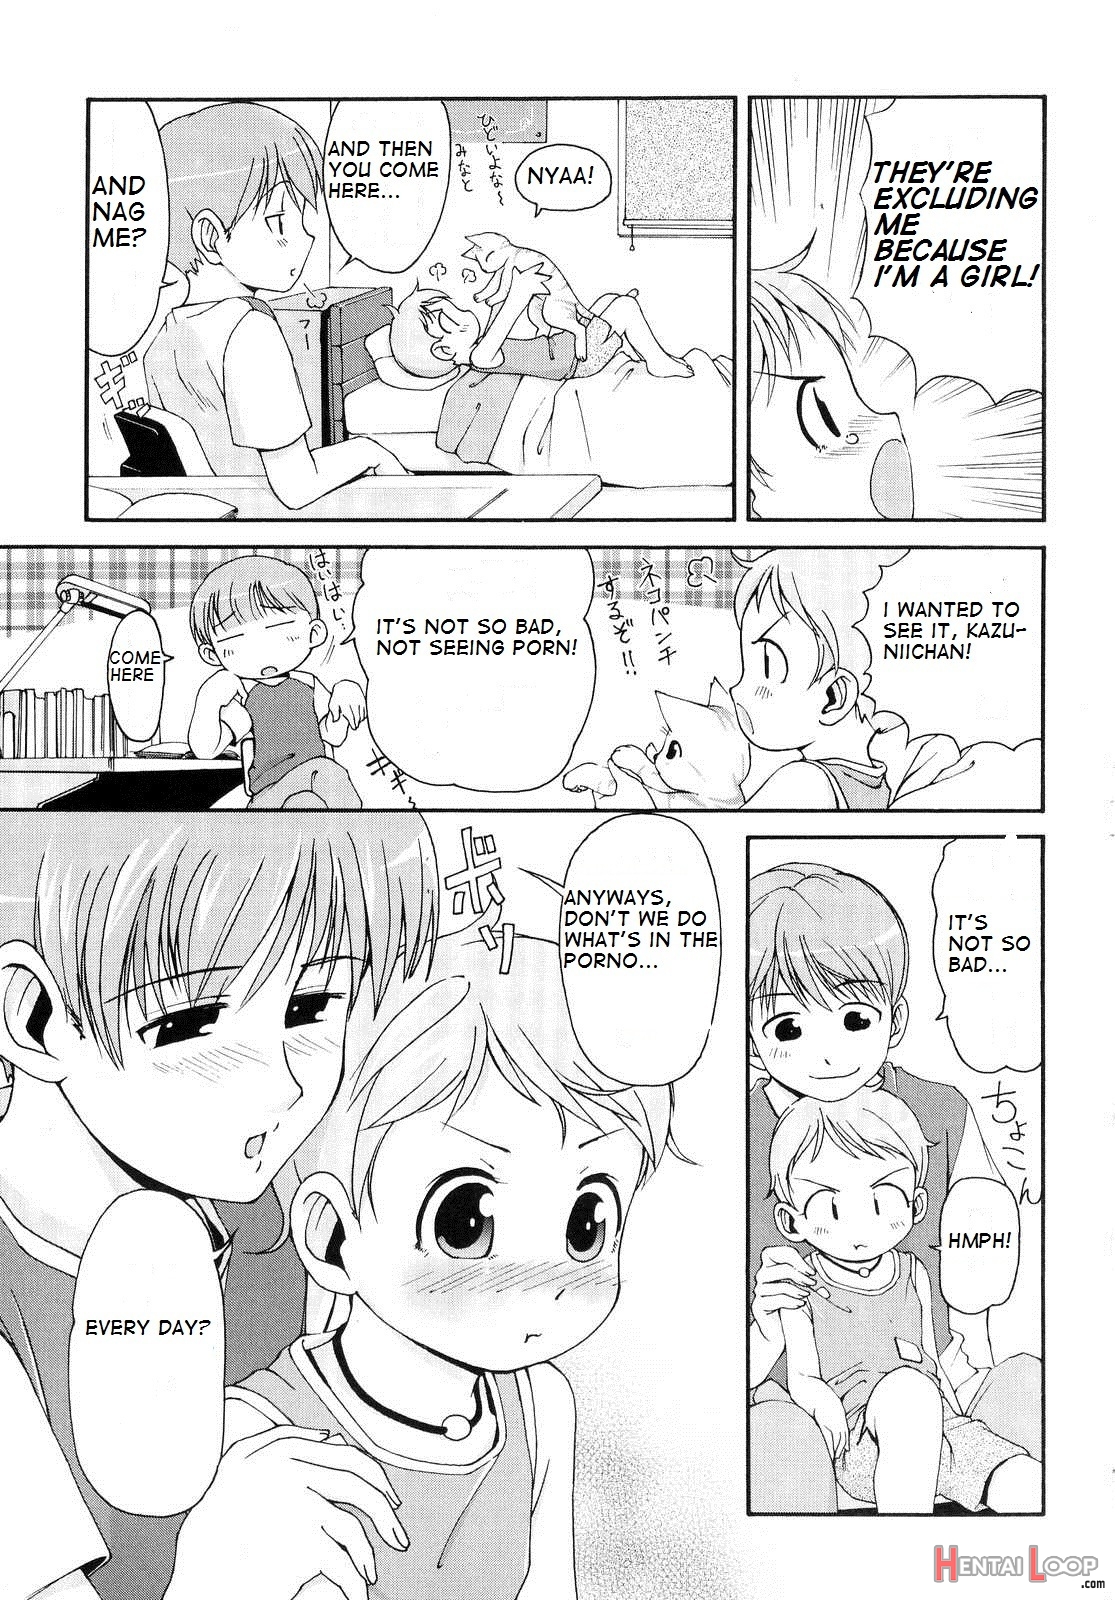 Totsugeki Tonari No Oniichan Ch 8-11 page 3